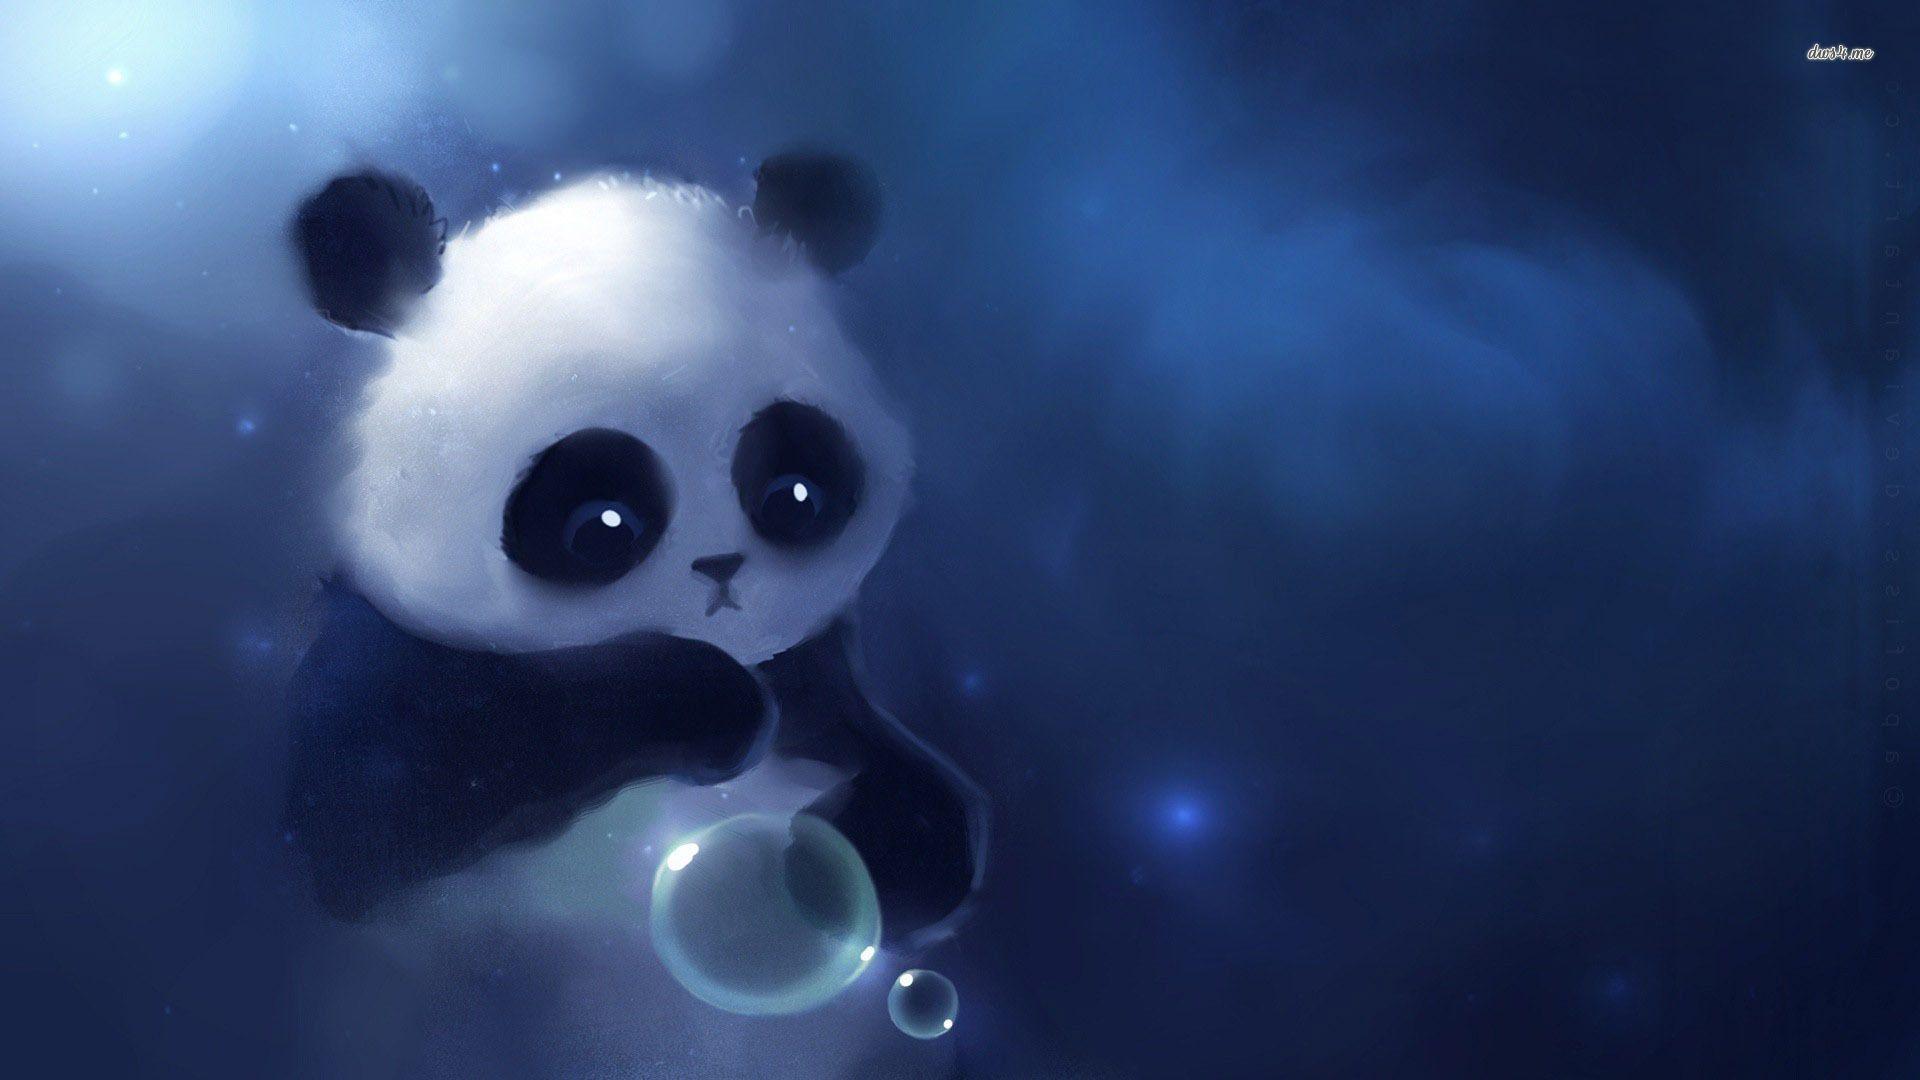 Cute Panda Backgrounds Wallpaper Cave HD Wallpapers Download Free Images Wallpaper [wallpaper981.blogspot.com]